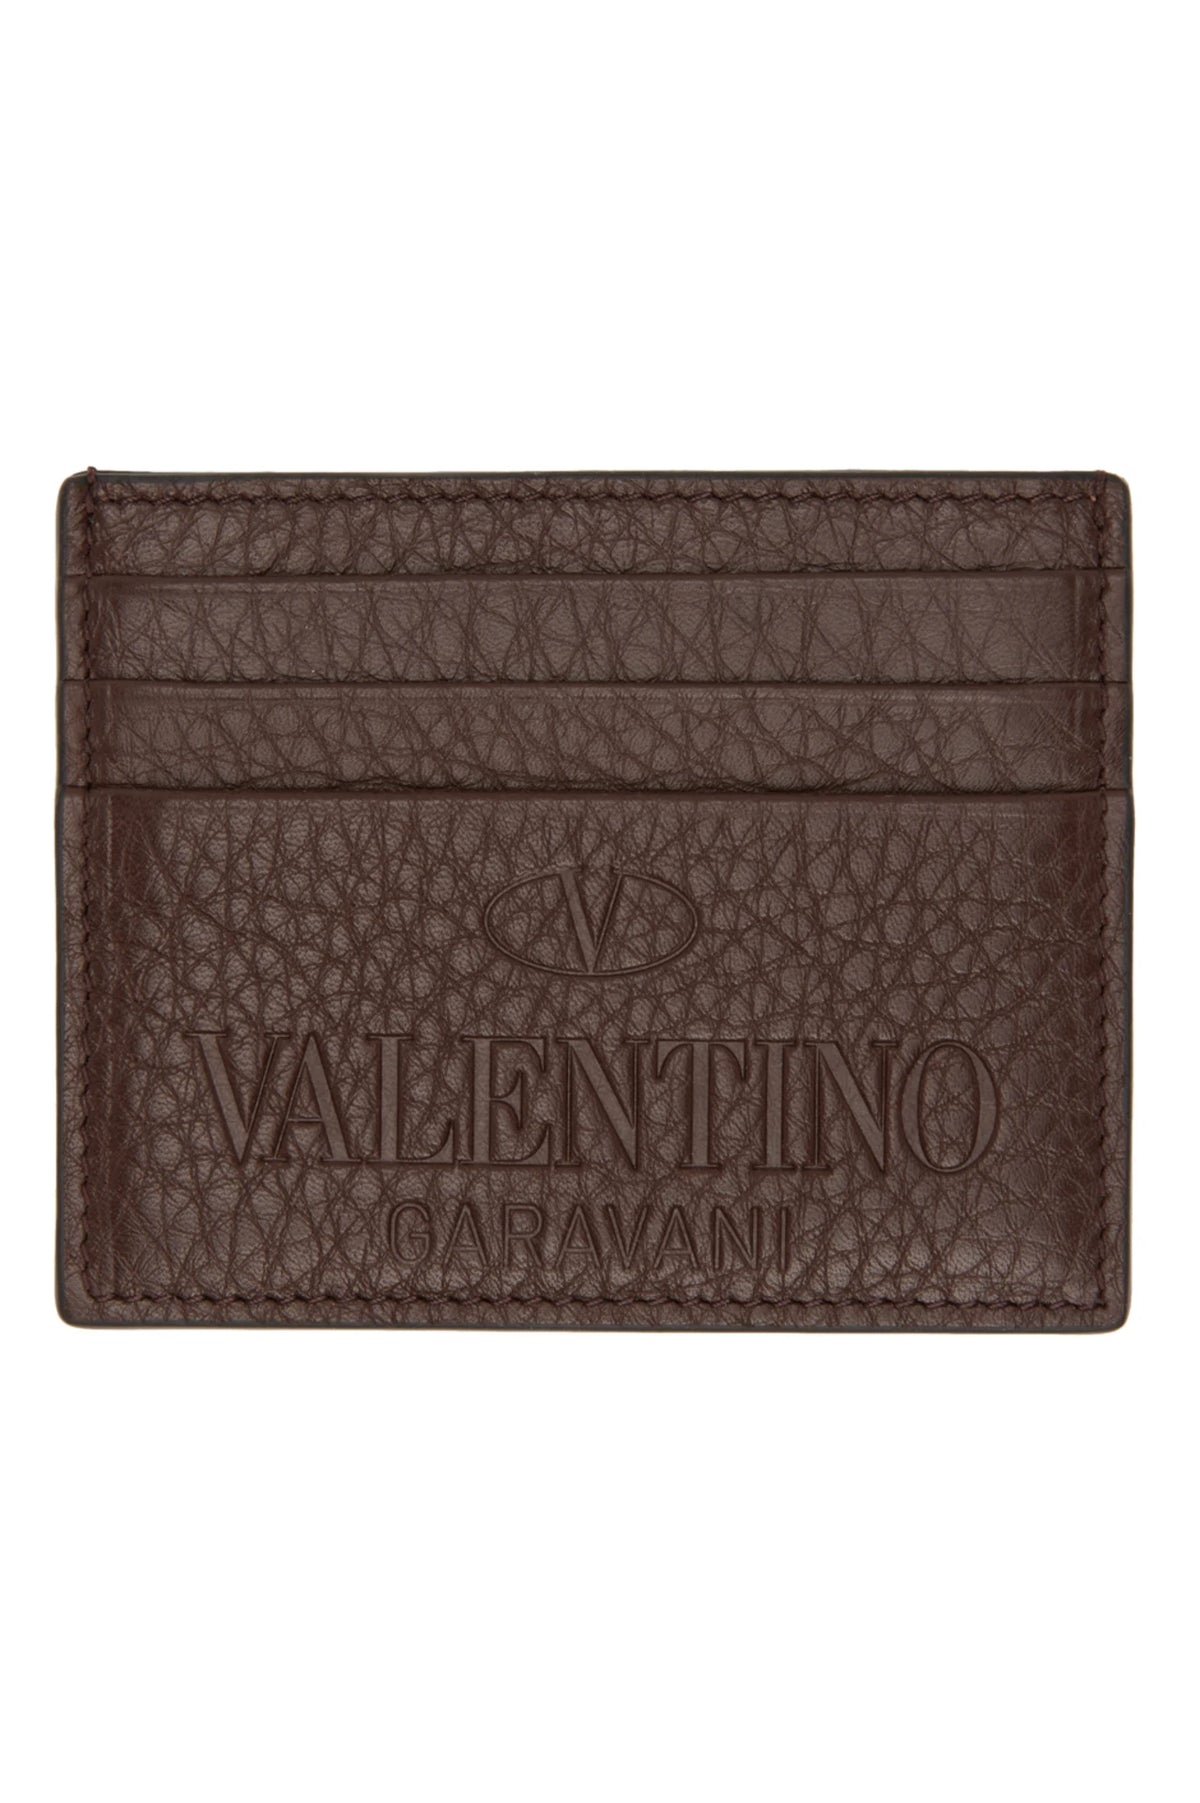 VALENTINO GARAVANI Brown Identity Card Holder